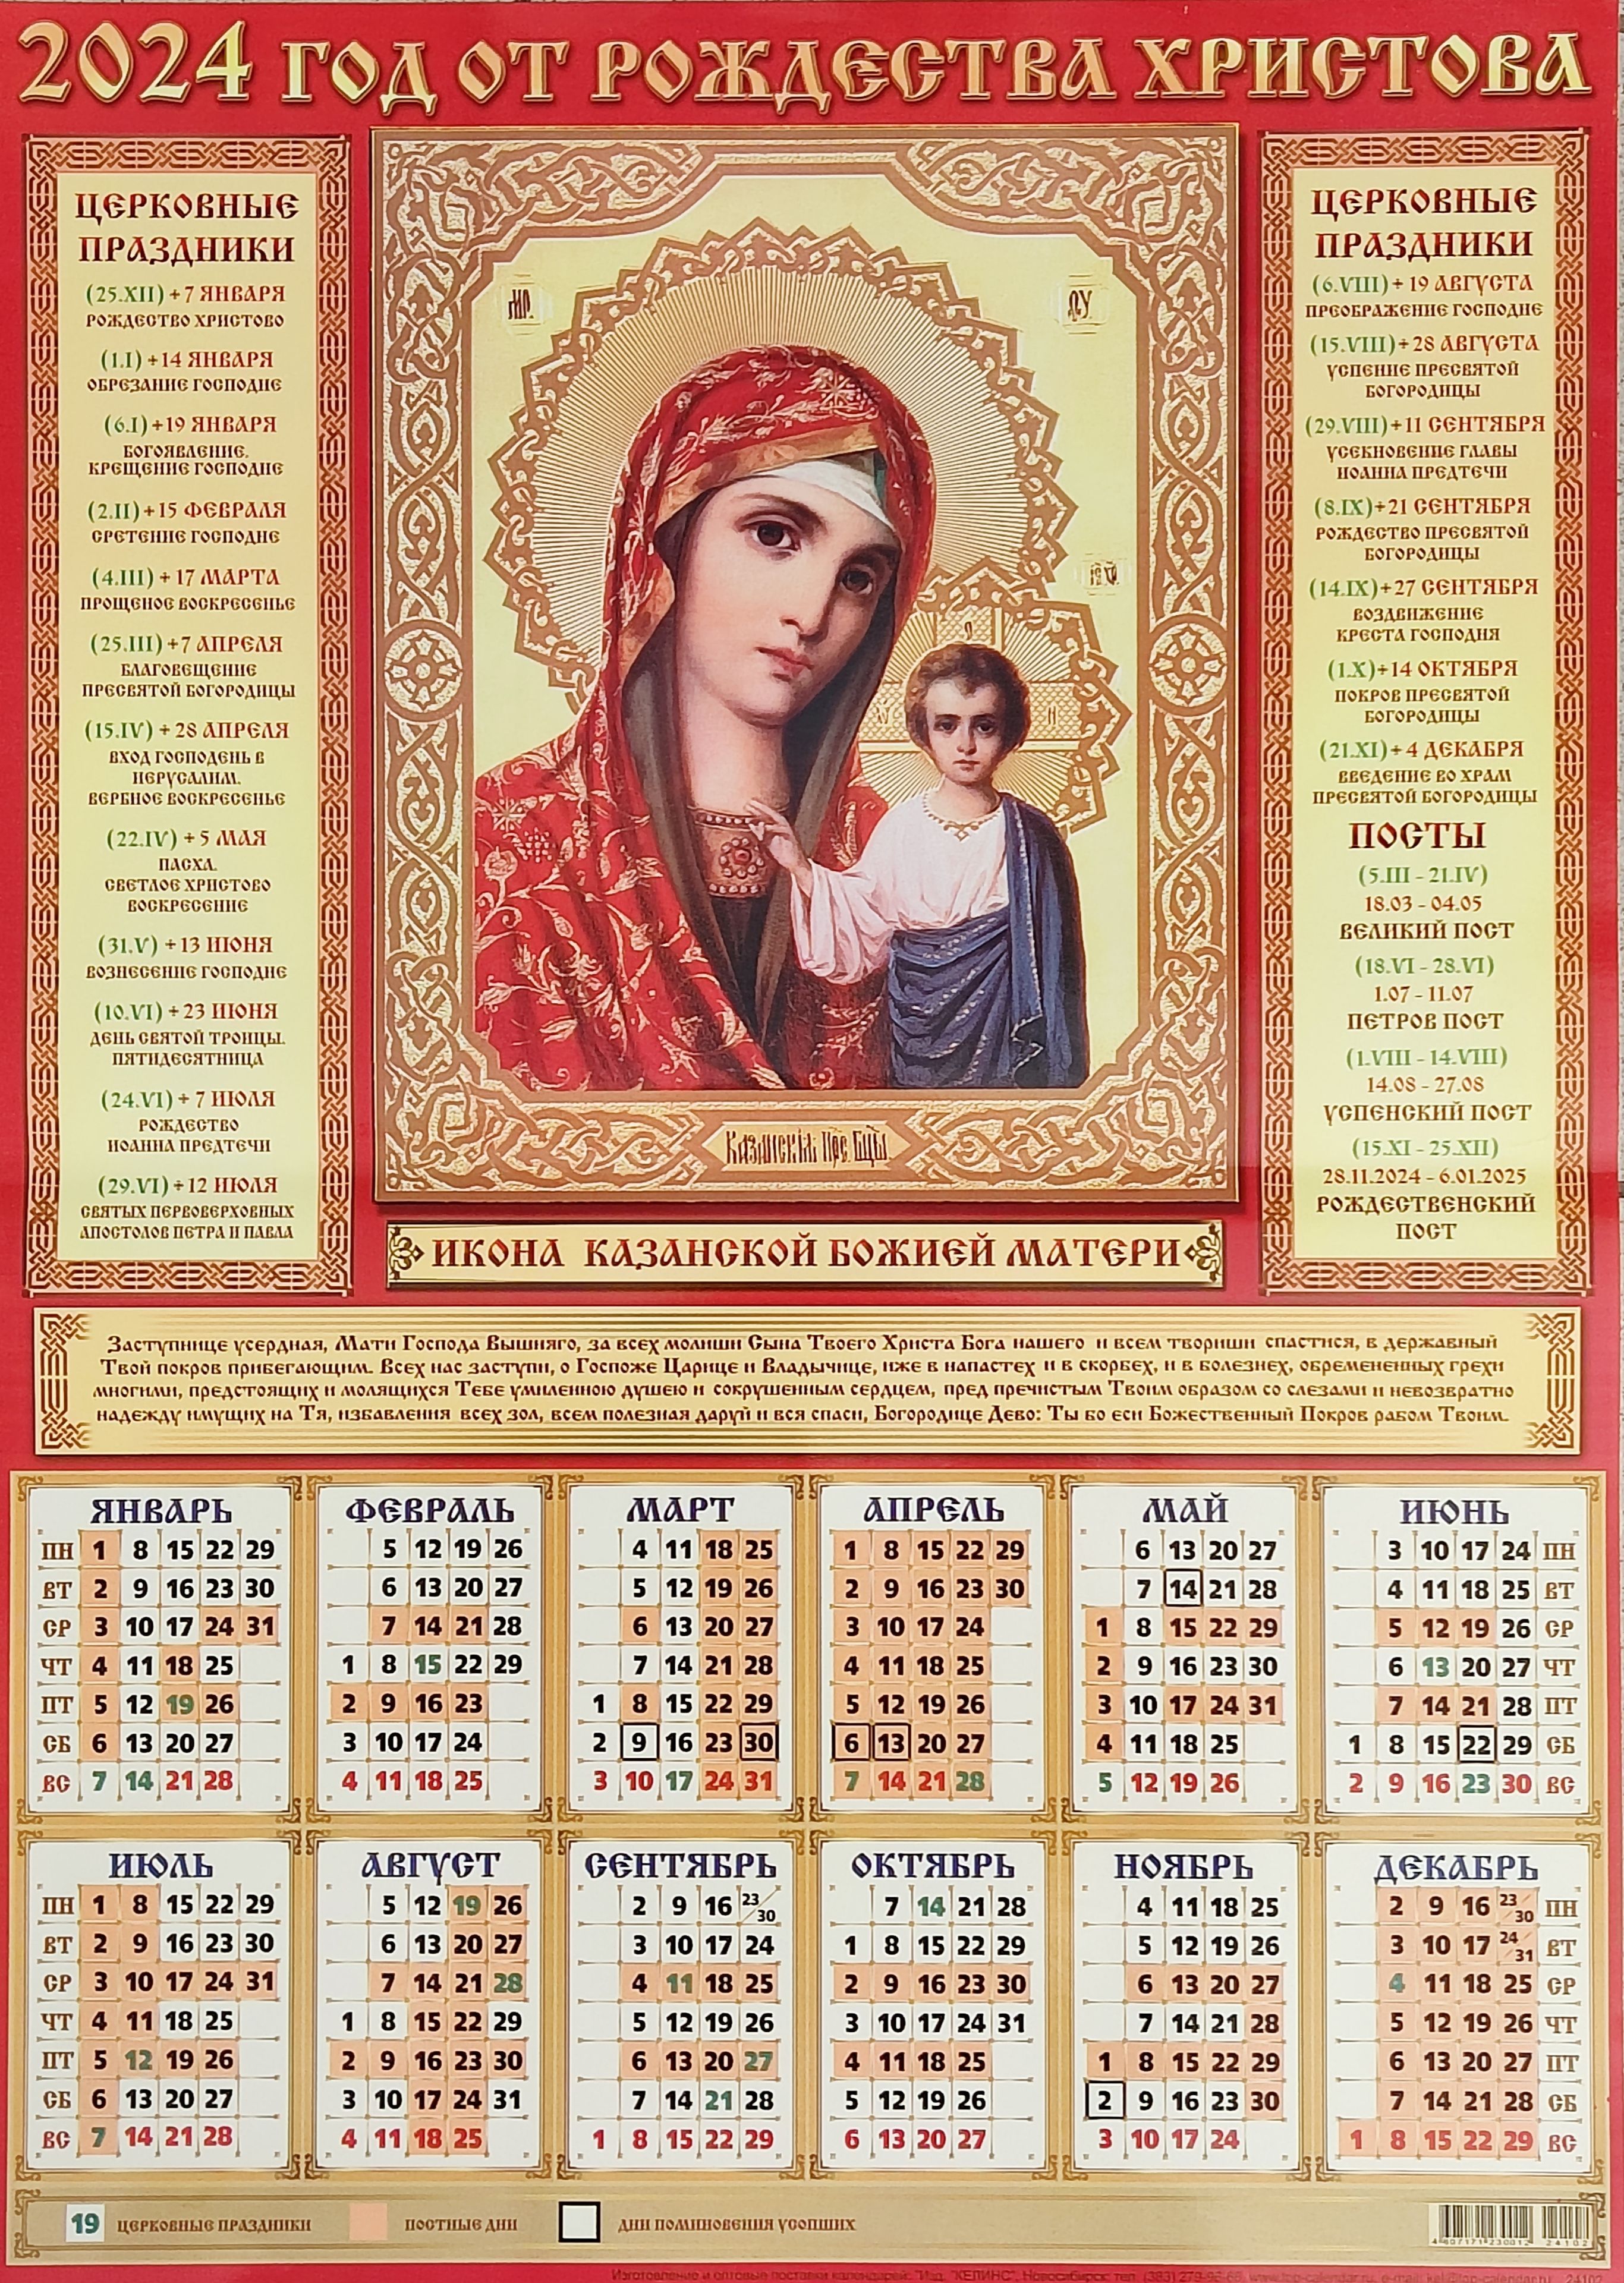 2 апреля 2024 православный календарь. Календарь с иконами 2024. Православный календарь на 2024 год. Православный календарь с иконами 2024. Календарь листовой 2023.